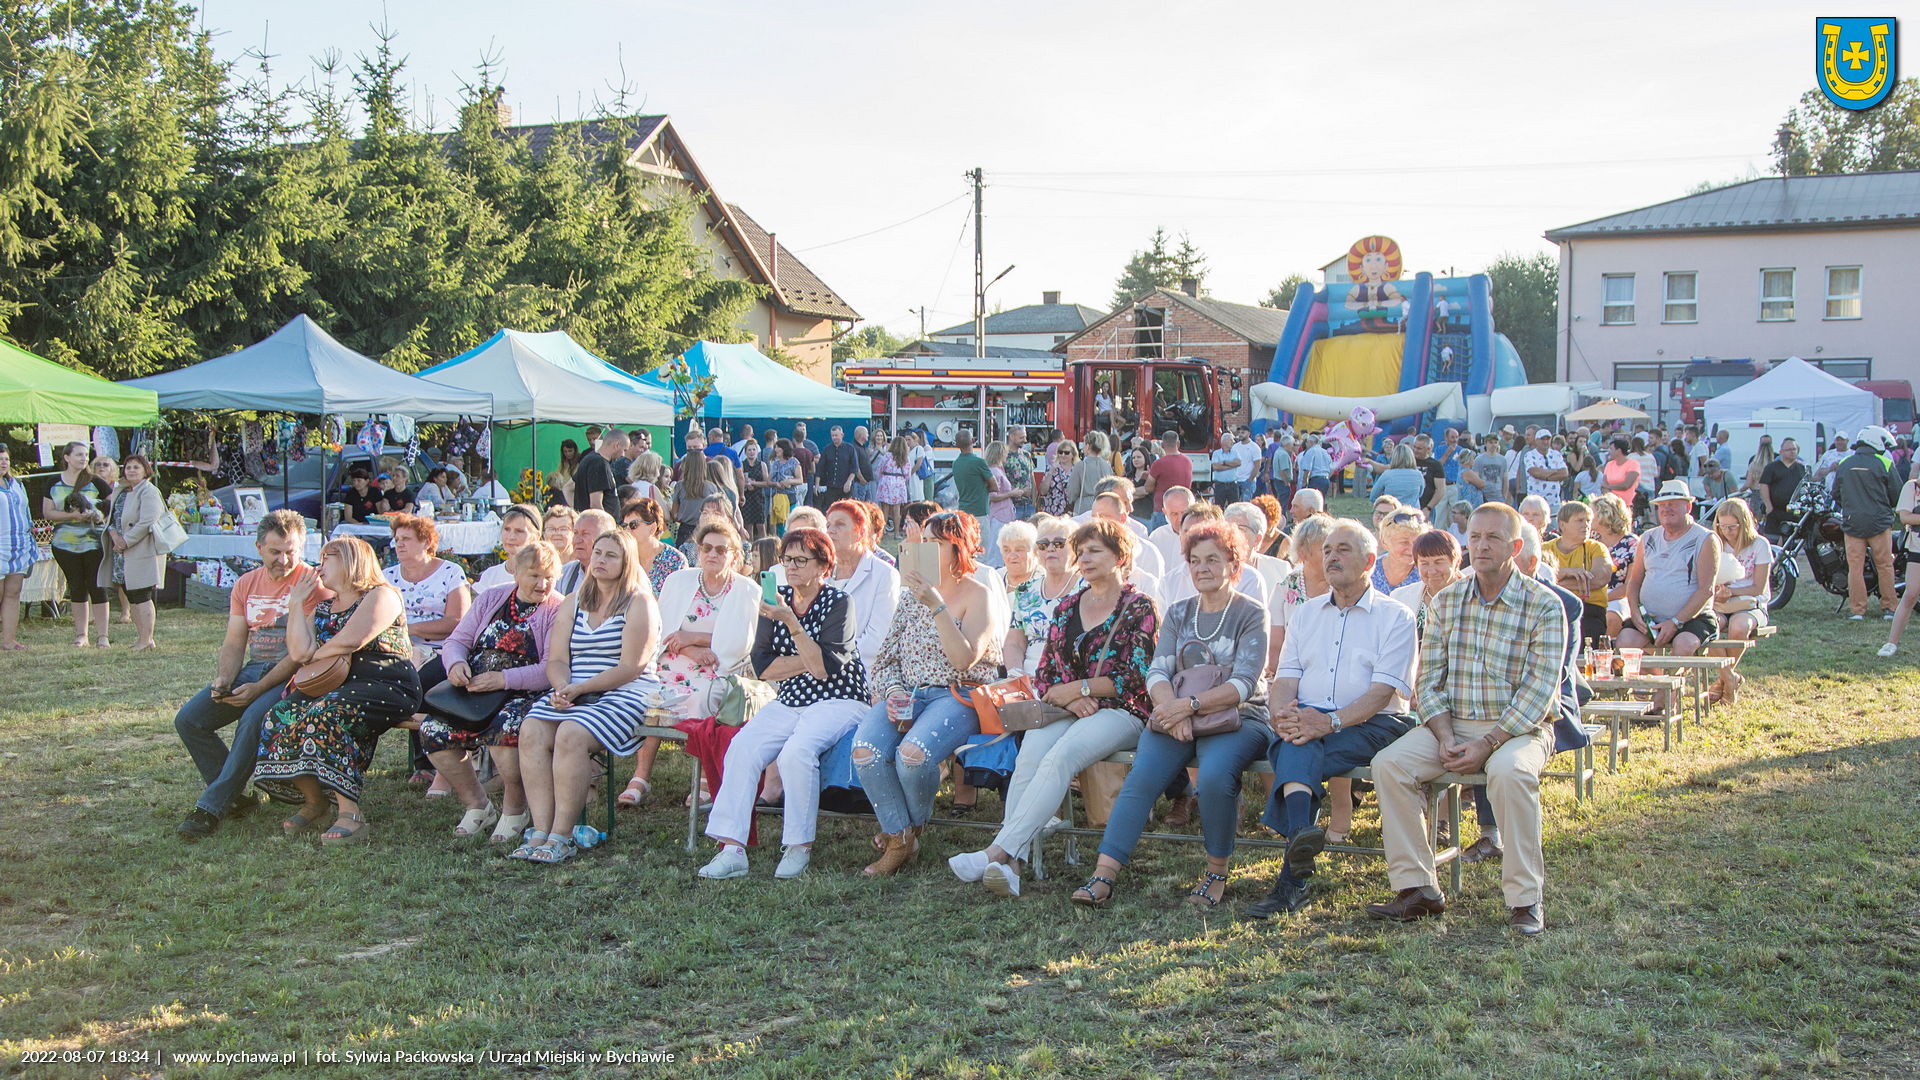 W minioną niedzielę, 7 sierpnia przy remizie OSP w Bychawce Drugiej odbył się piknik integracyjny dla społeczności wsi i okolic